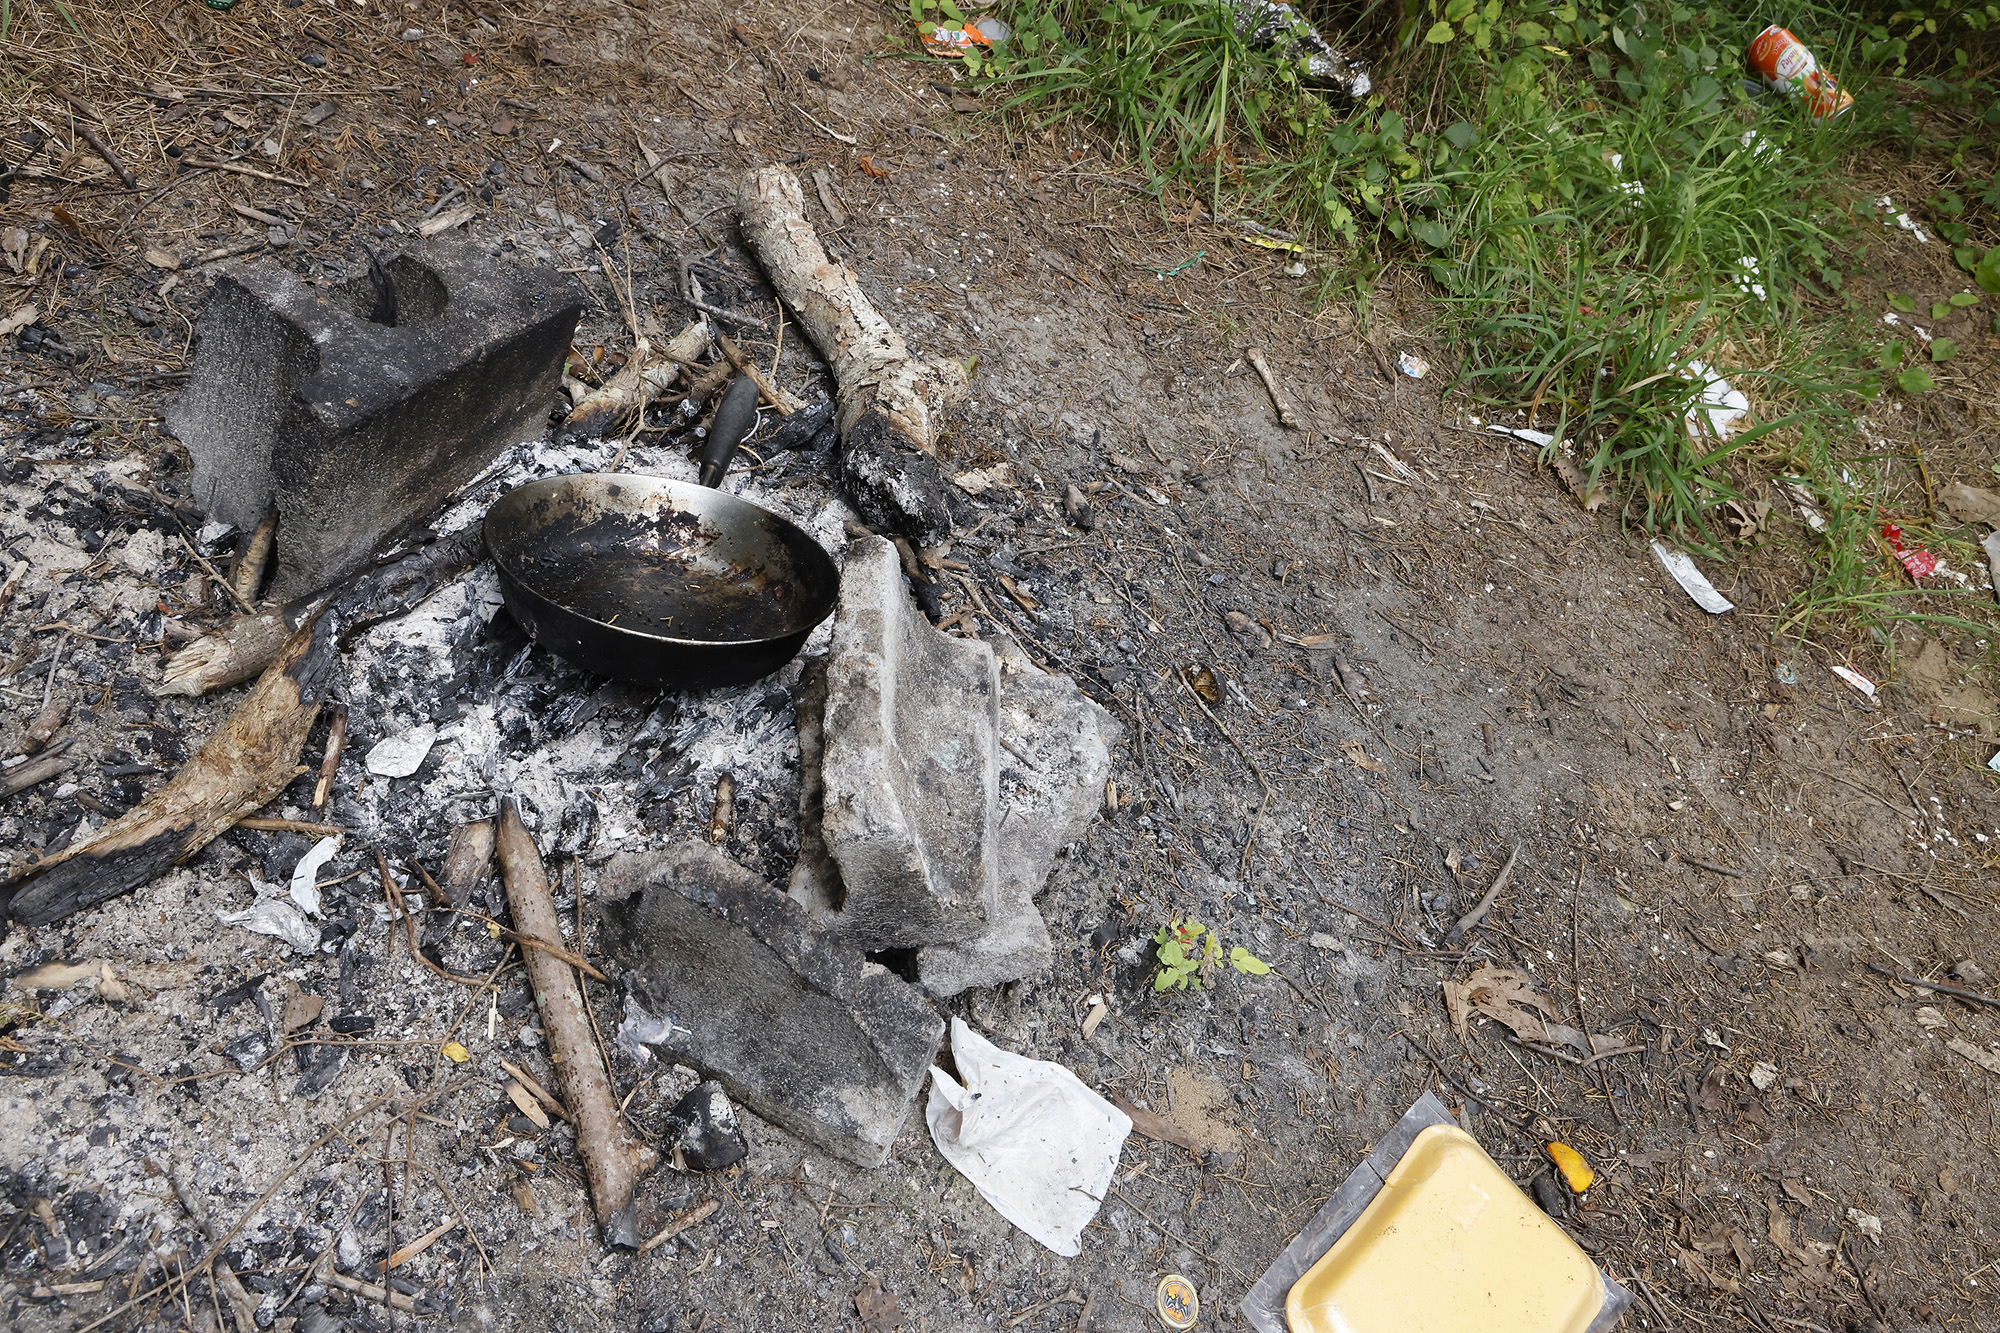 移民营的露天做饭火坑。